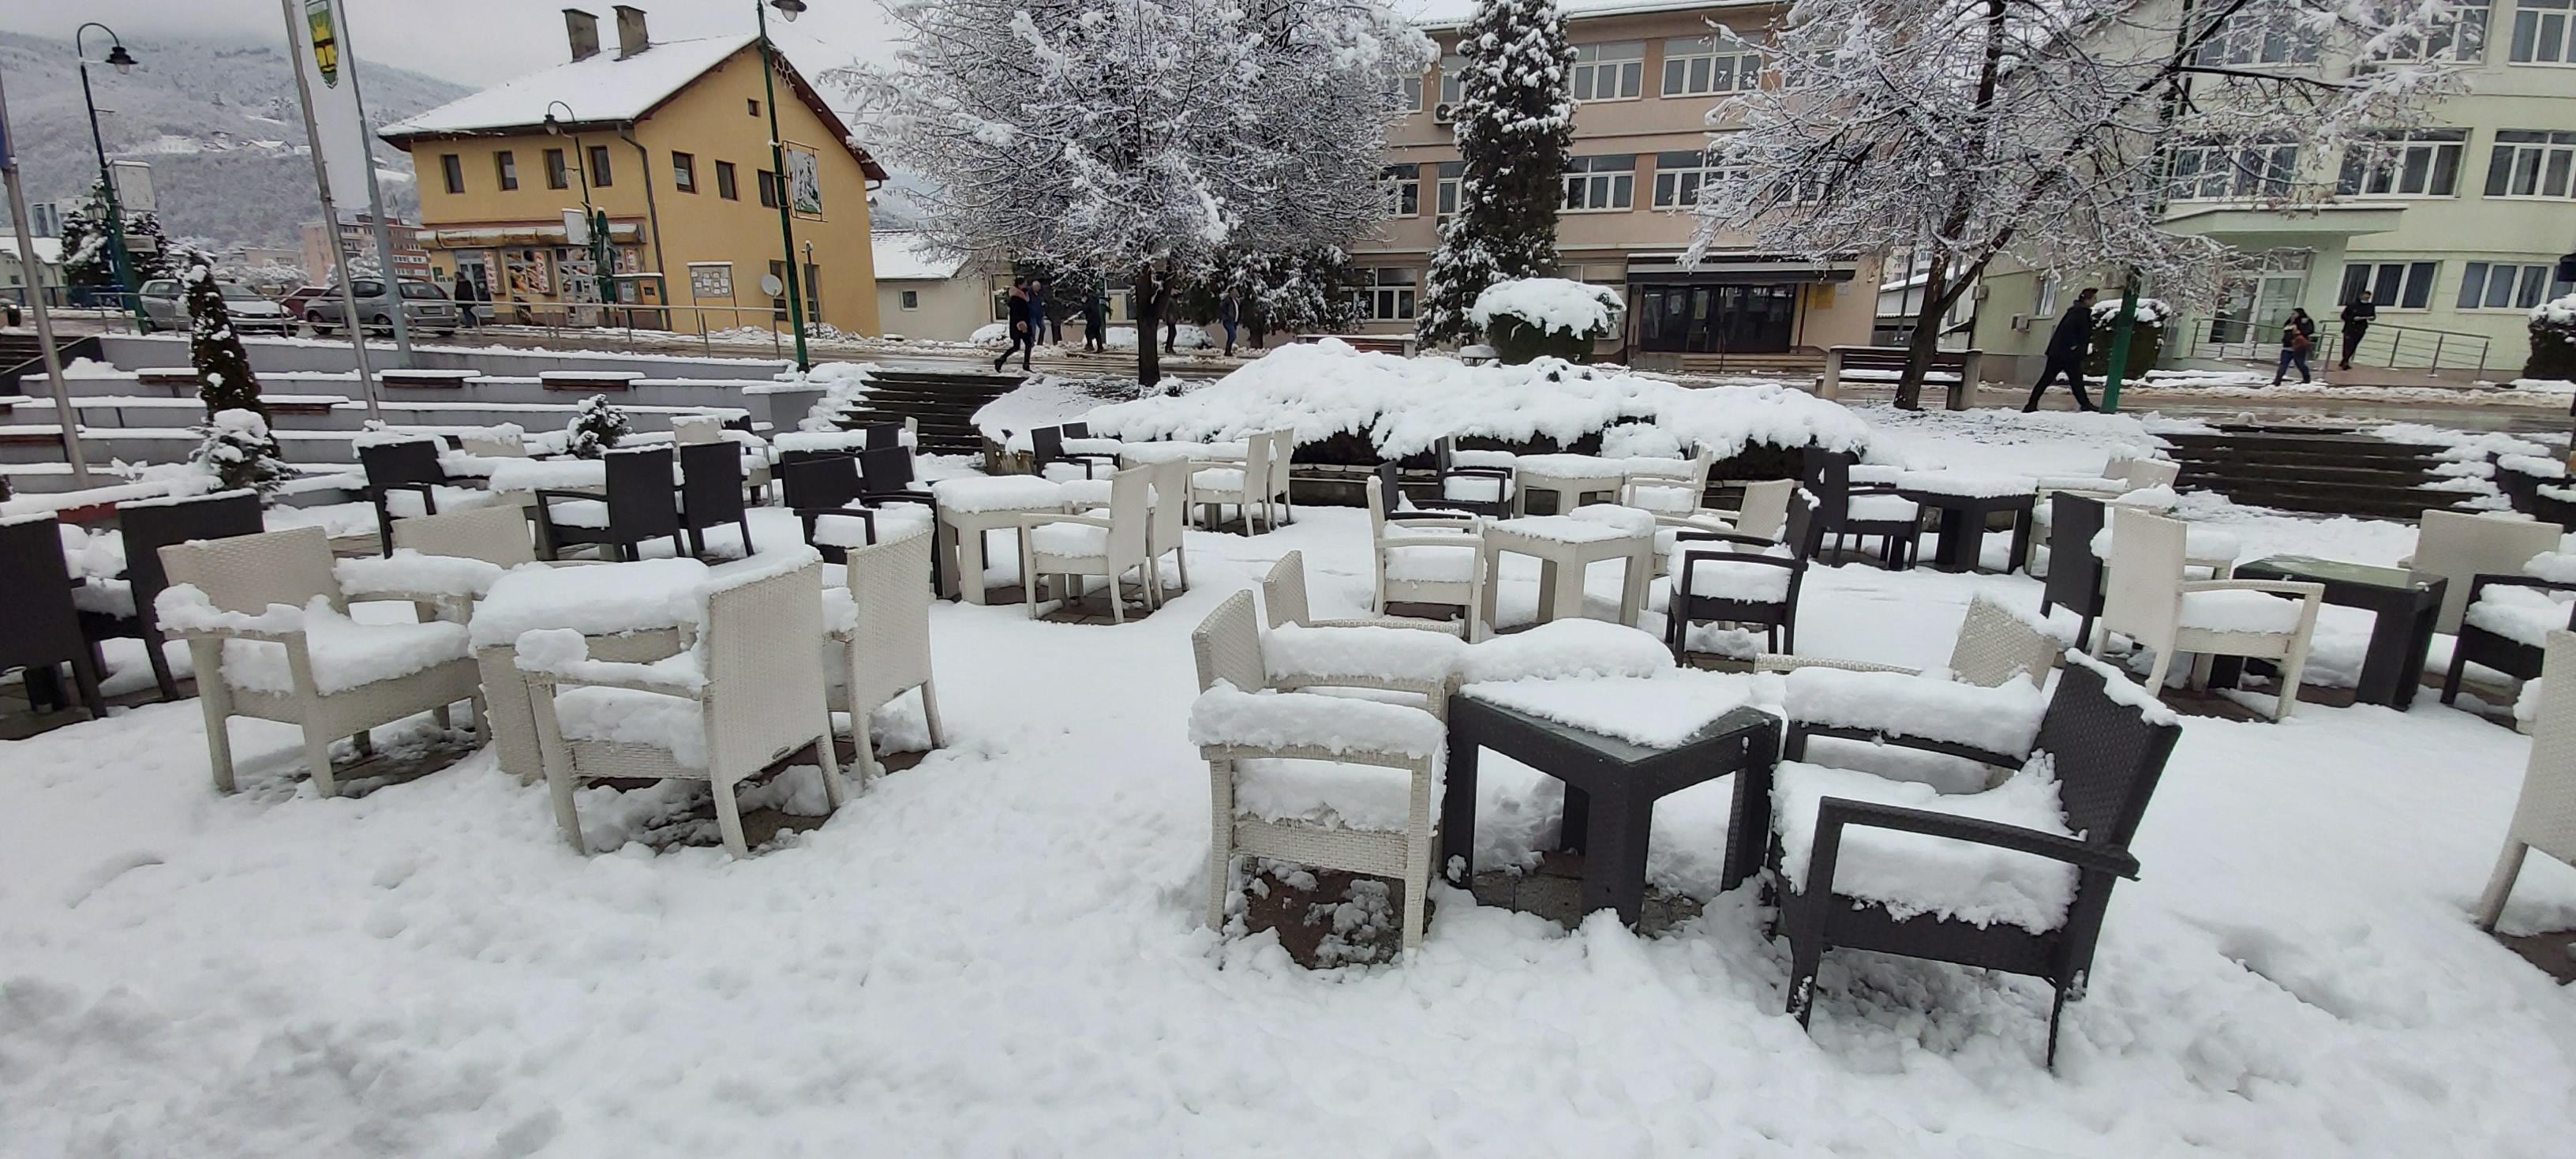 Snijeg zatrpao naselja, domaćinstva ostala bez struje